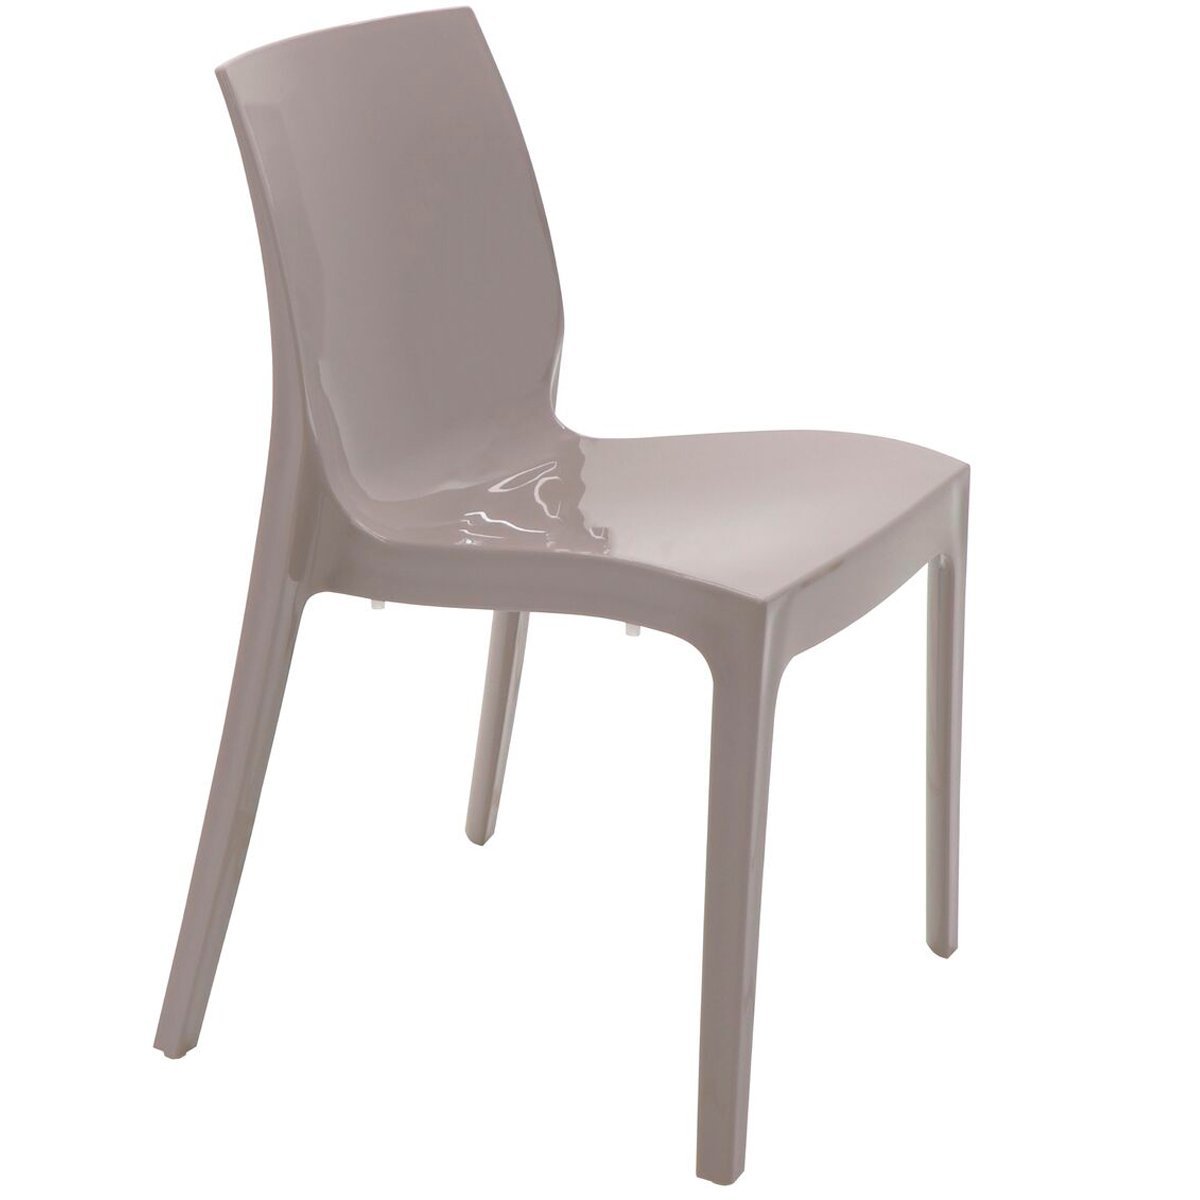 Conjunto 4 Cadeiras de Plástico Polipropileno Brilho Alice Summa - Tramontina - Camurça 92037/210 - 4